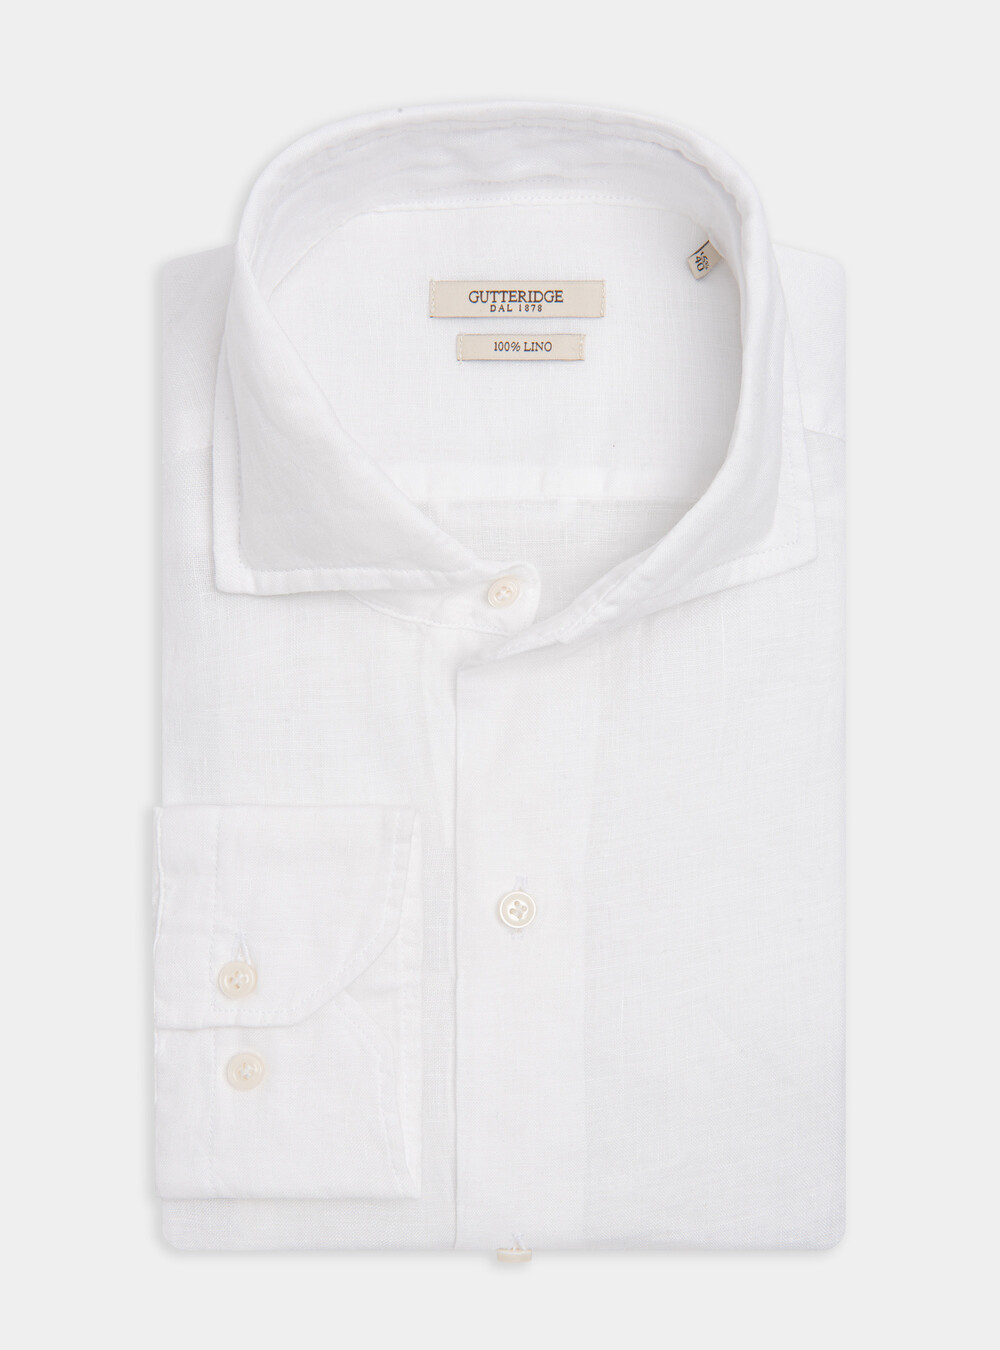 French collar shirt in pure linen | GutteridgeEU | Uomo